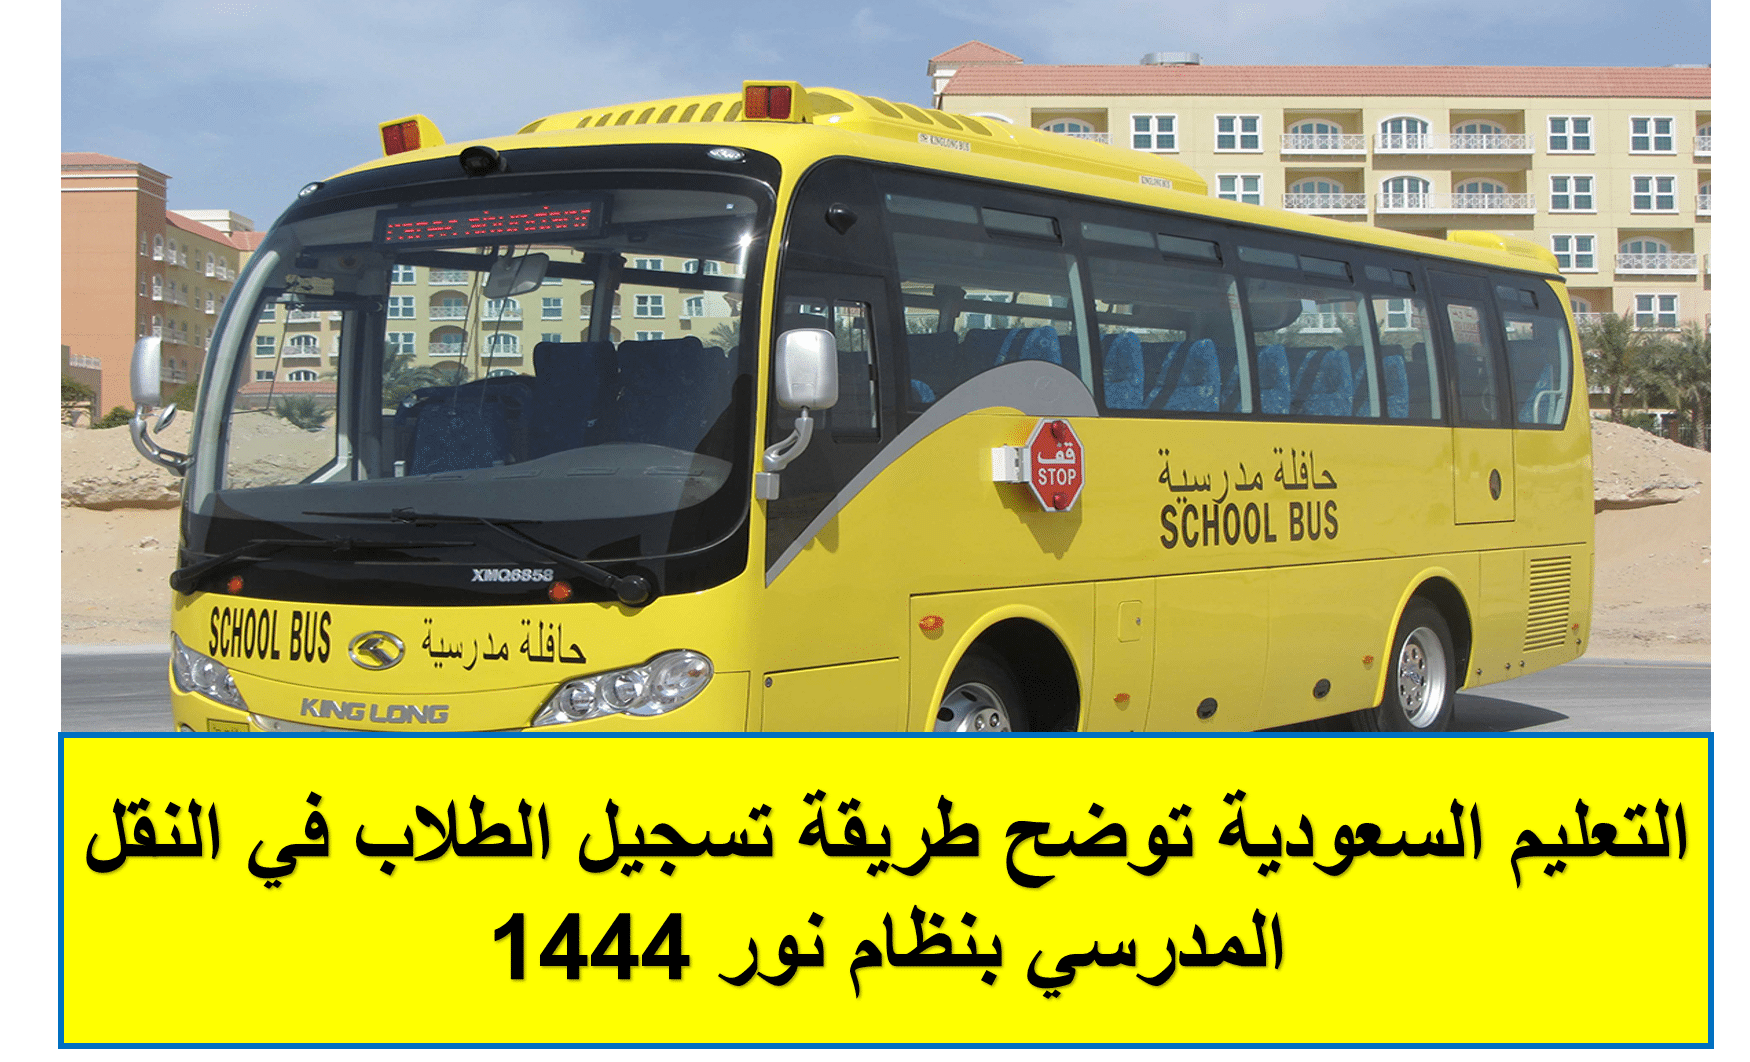 التعليم السعودية توضح طريقة تسجيل الطلاب في النقل المدرسي بنظام نور 1444